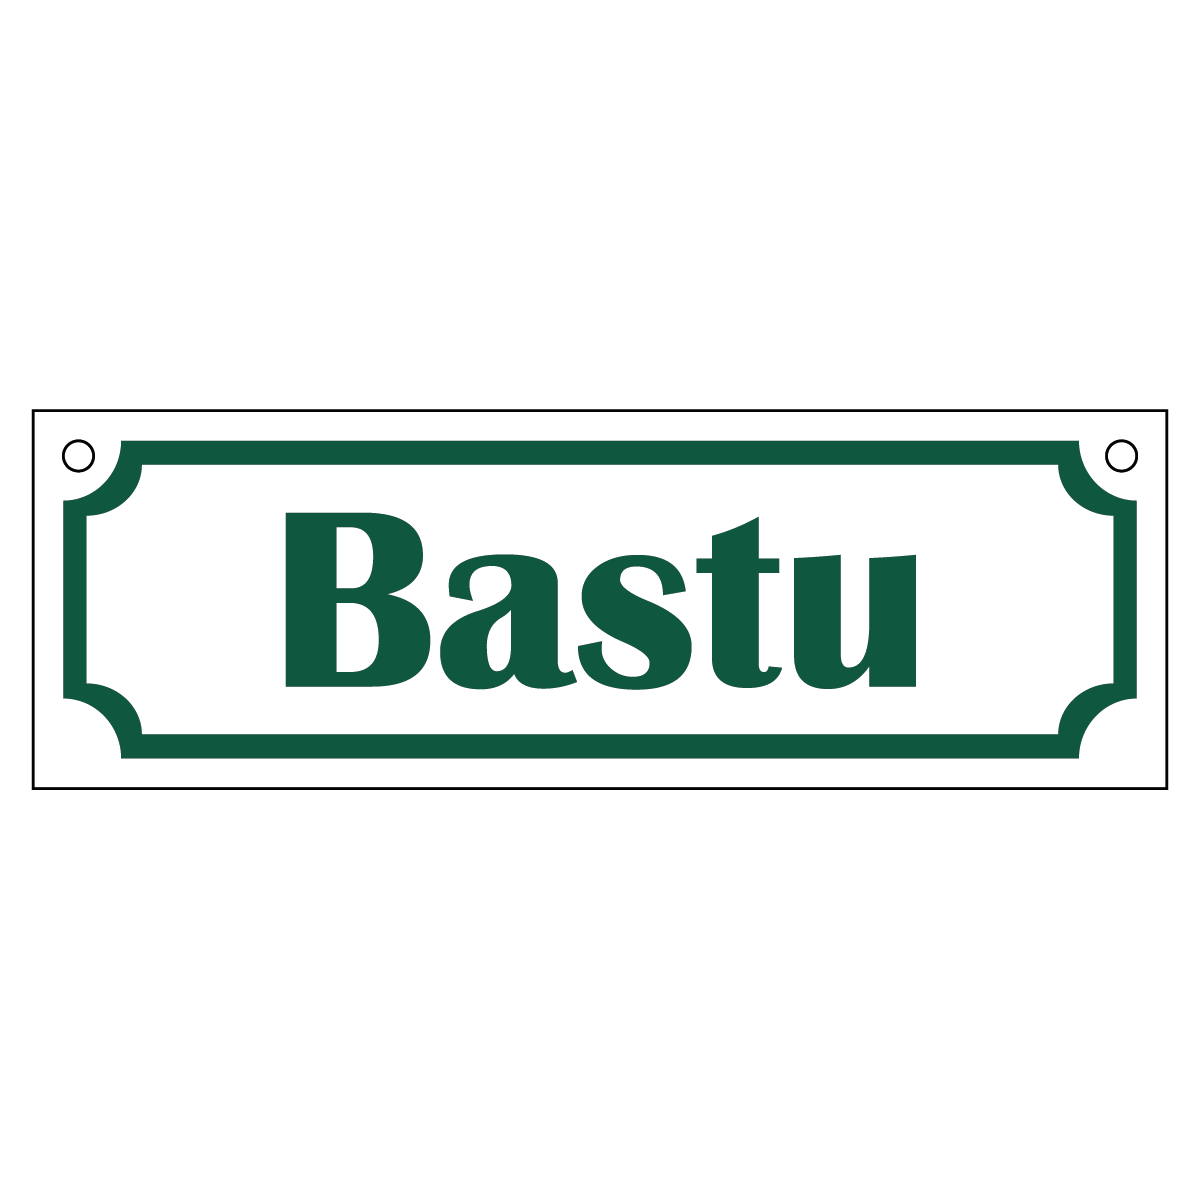 Bastu - Skylt - 150x50mm - Vit - Grön